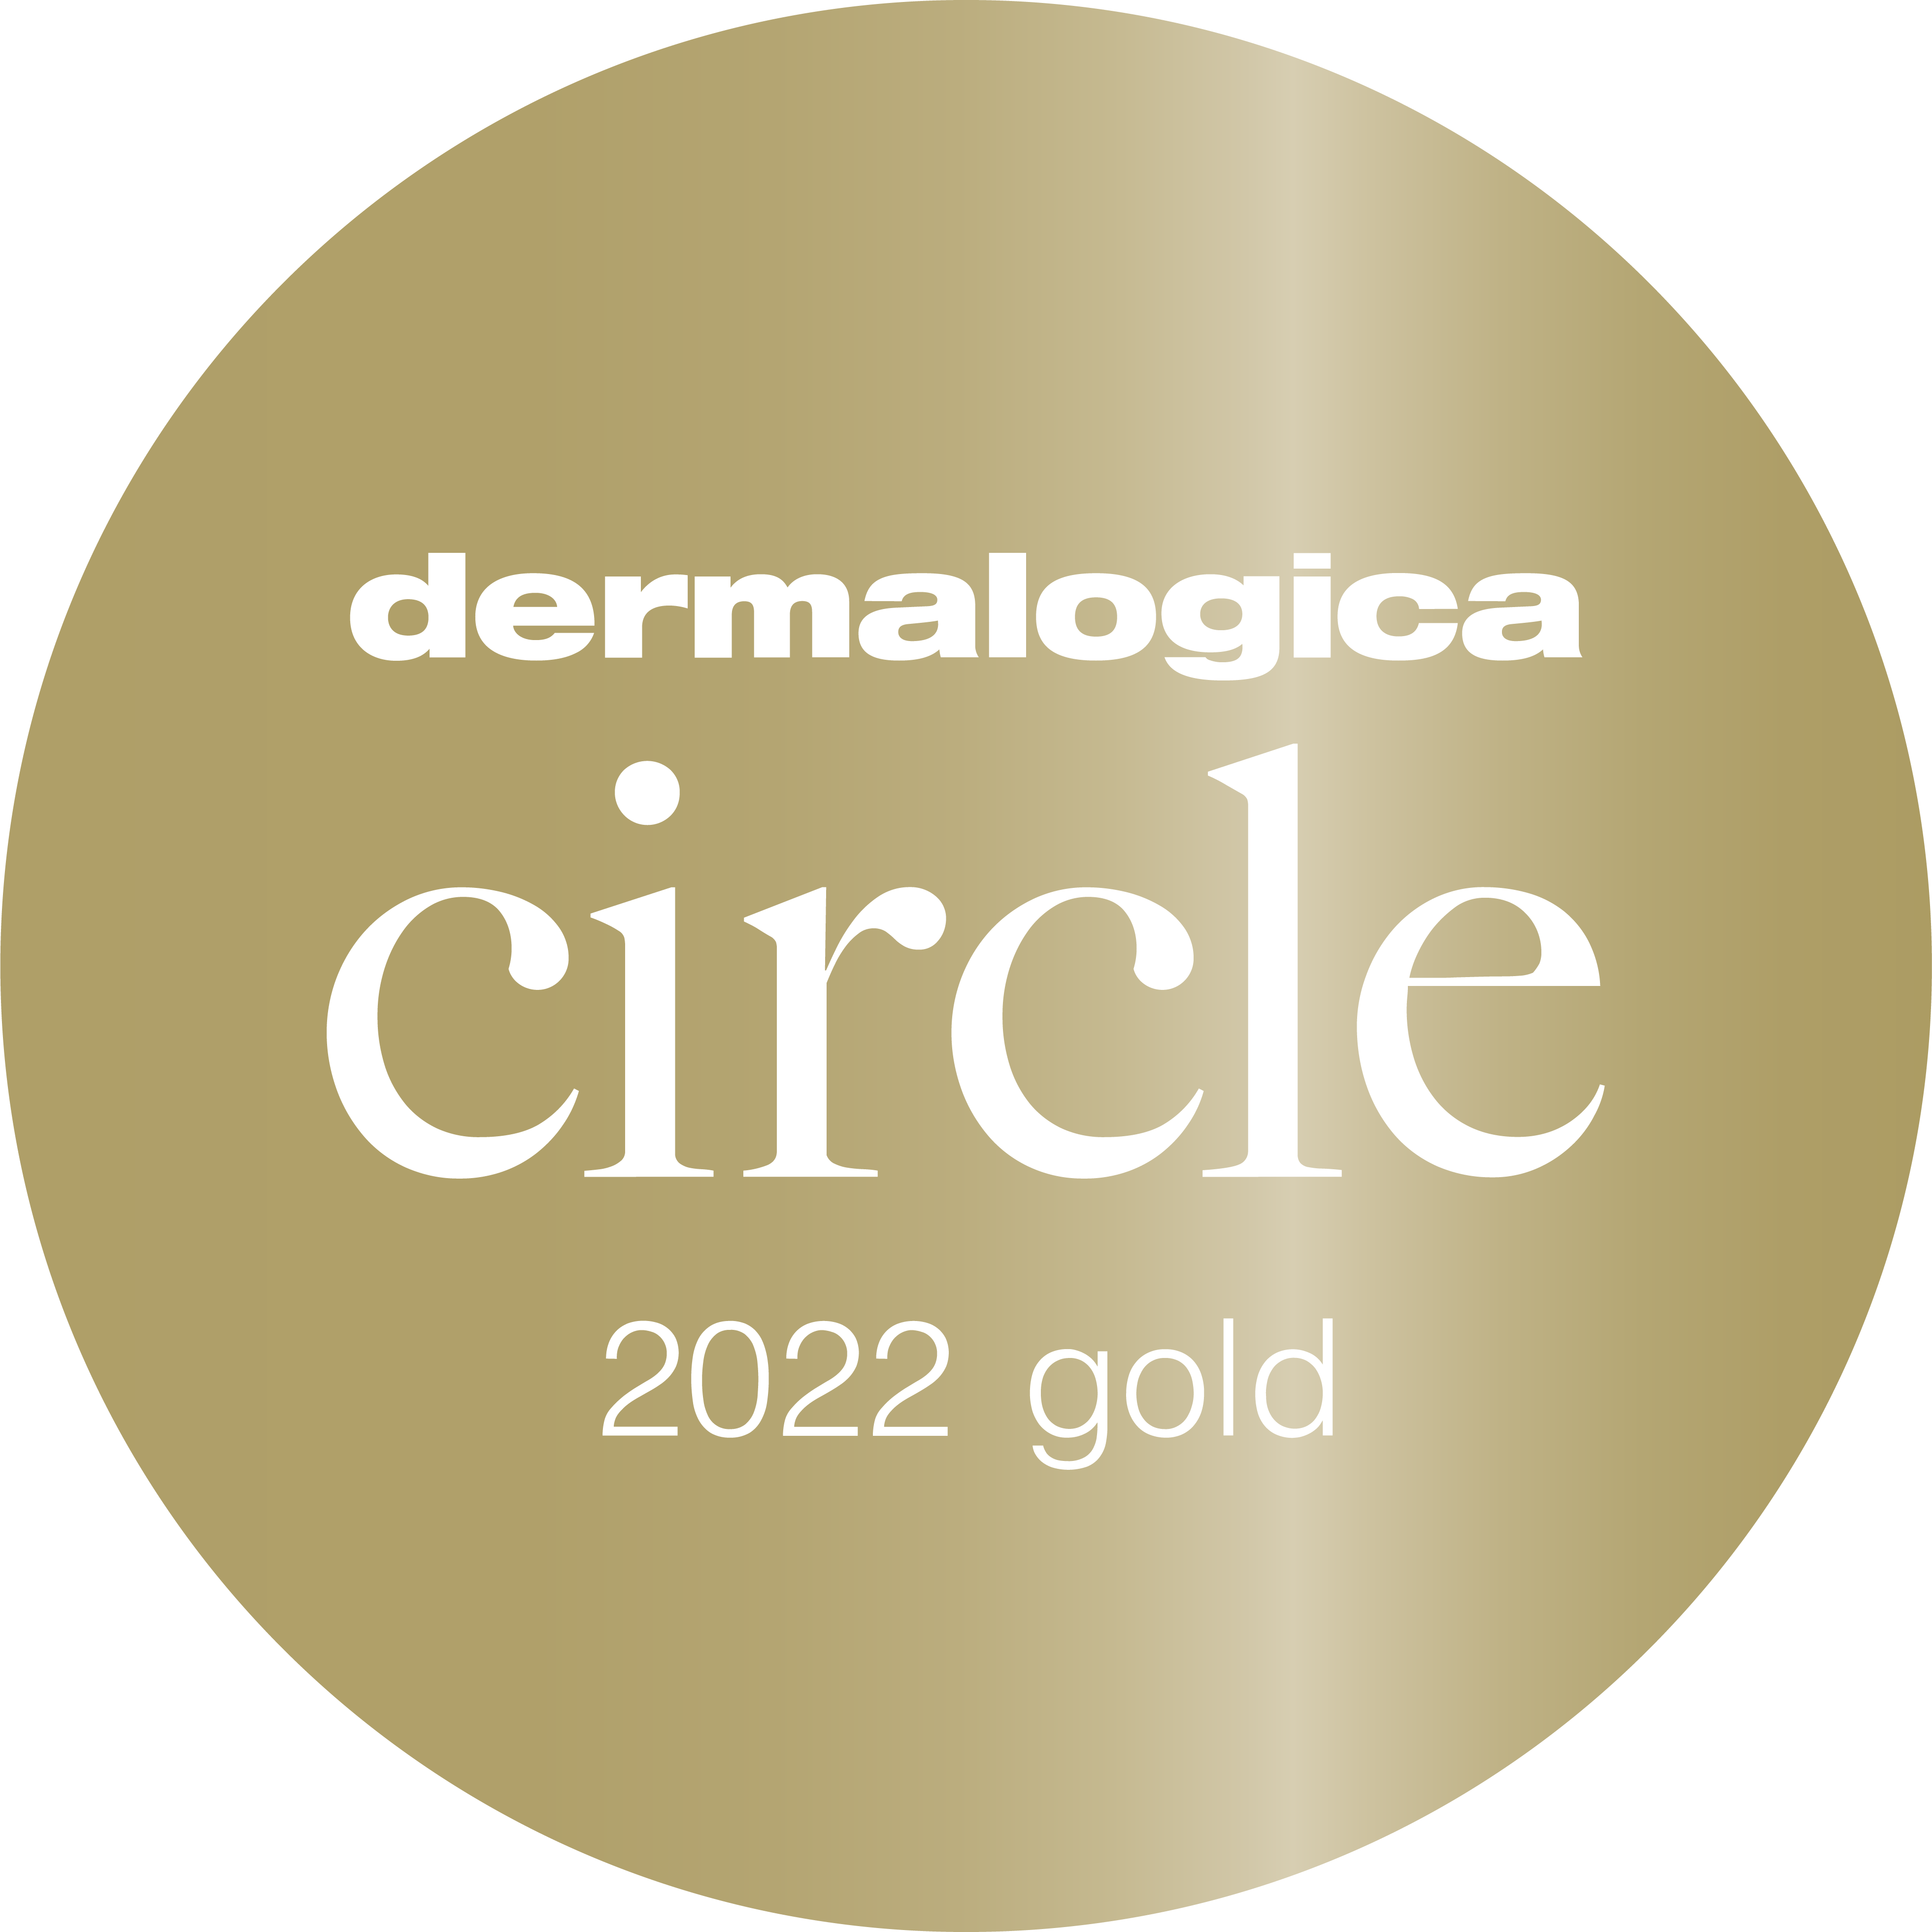 dermalogica circle gold 2022 logo